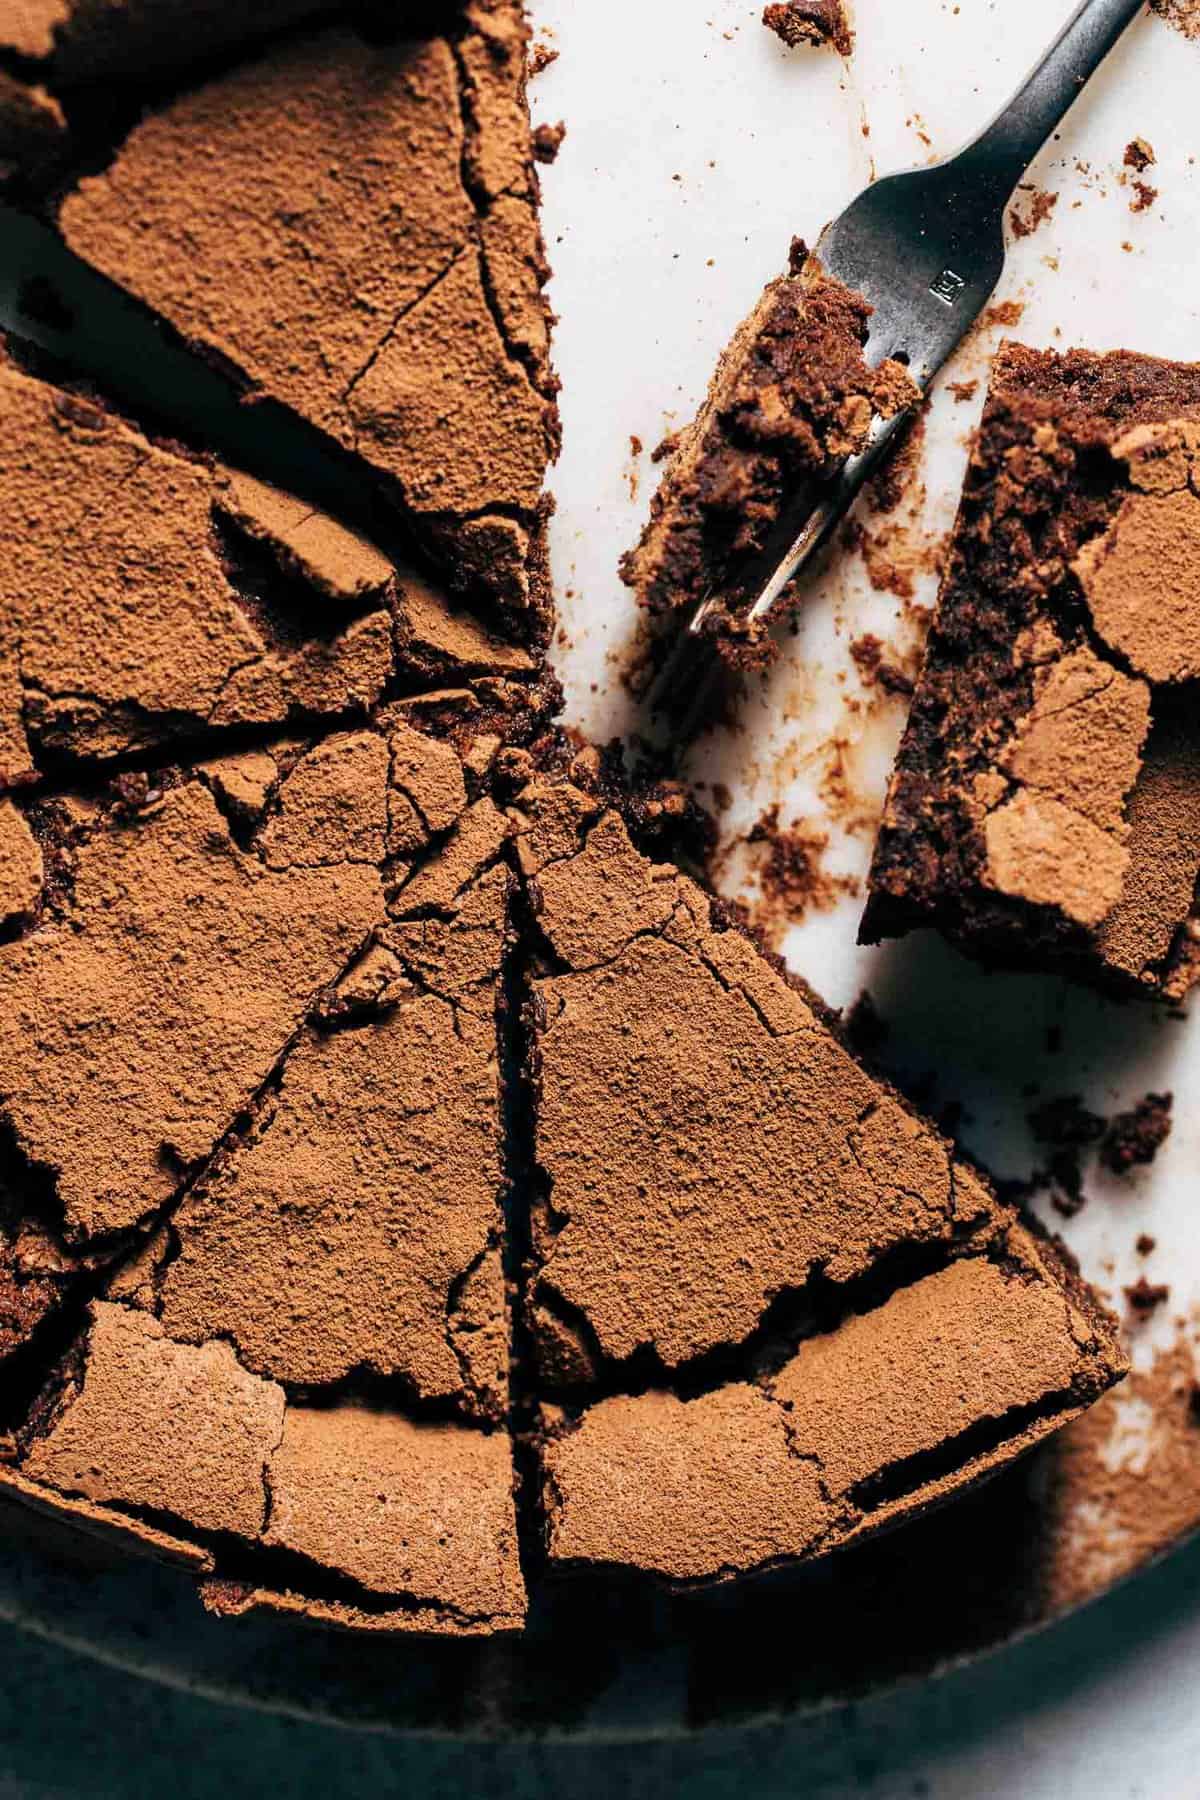 https://butternutbakeryblog.com/wp-content/uploads/2020/04/flourless-chocolate-cake-2.jpg